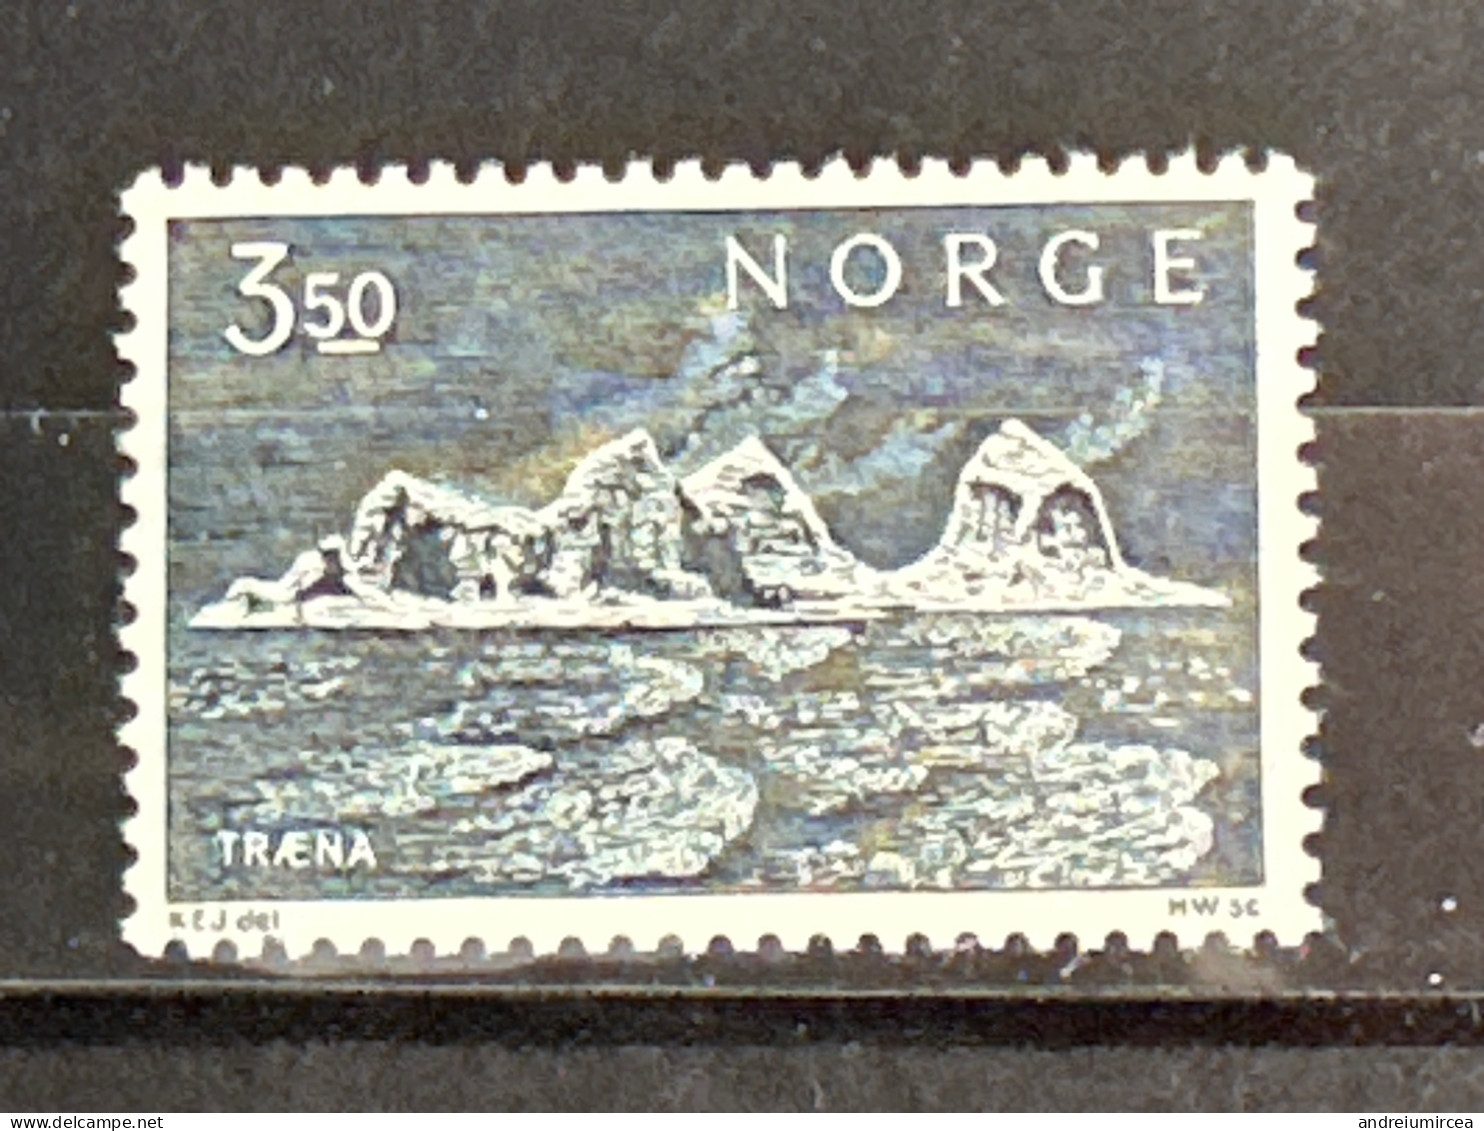 Norvege MNH - Nuovi